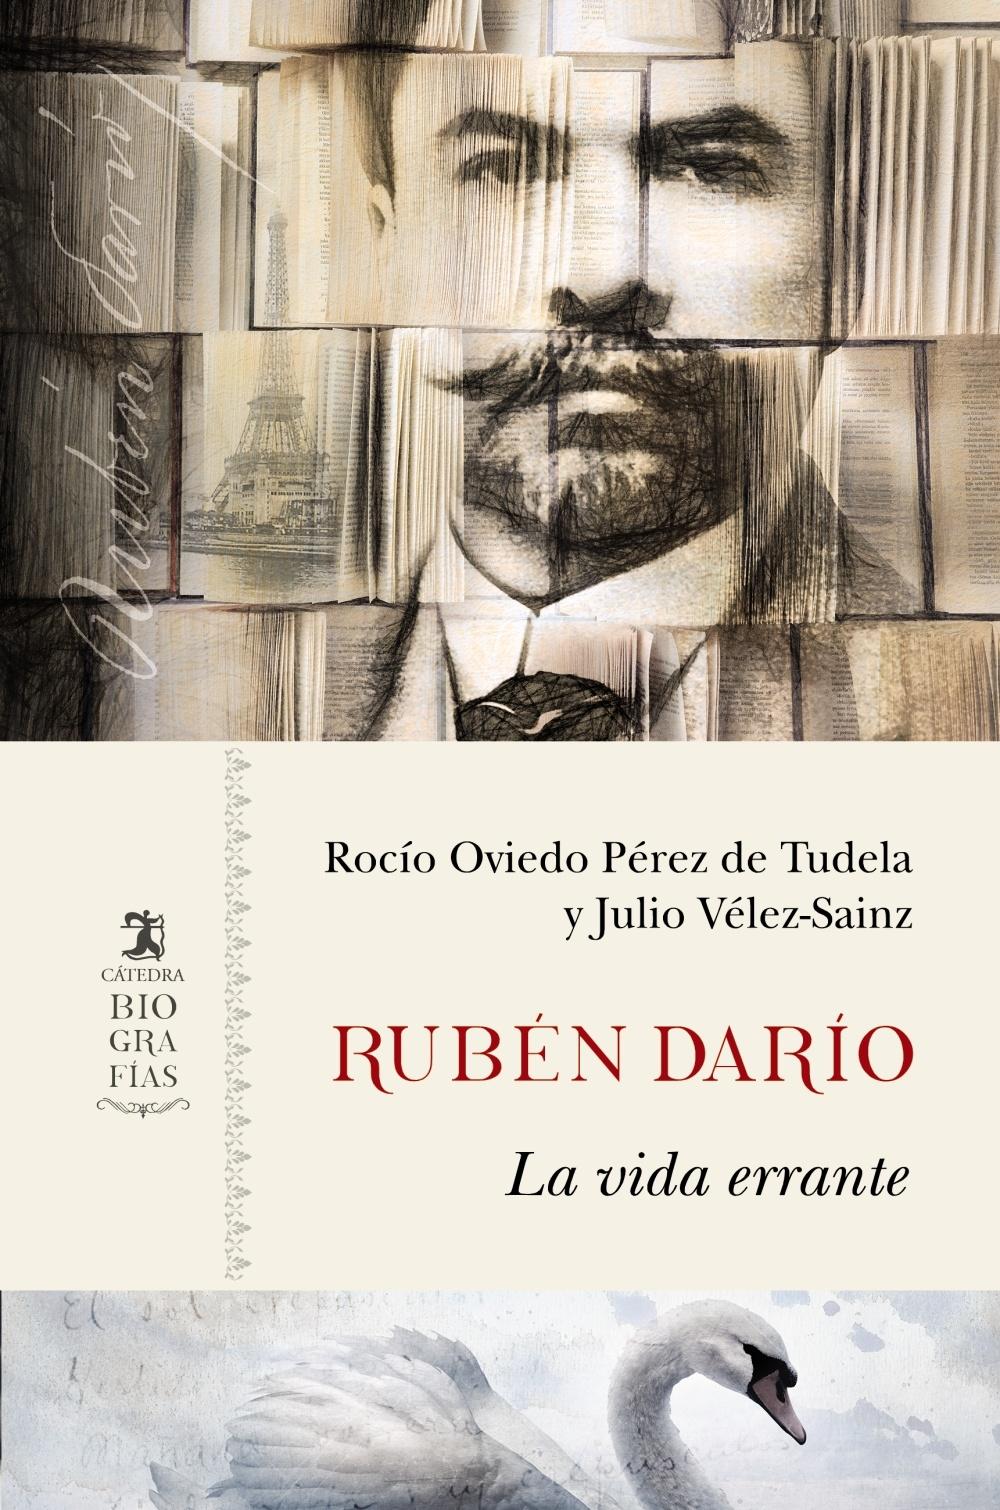 Rubén Darío "La vida errante"